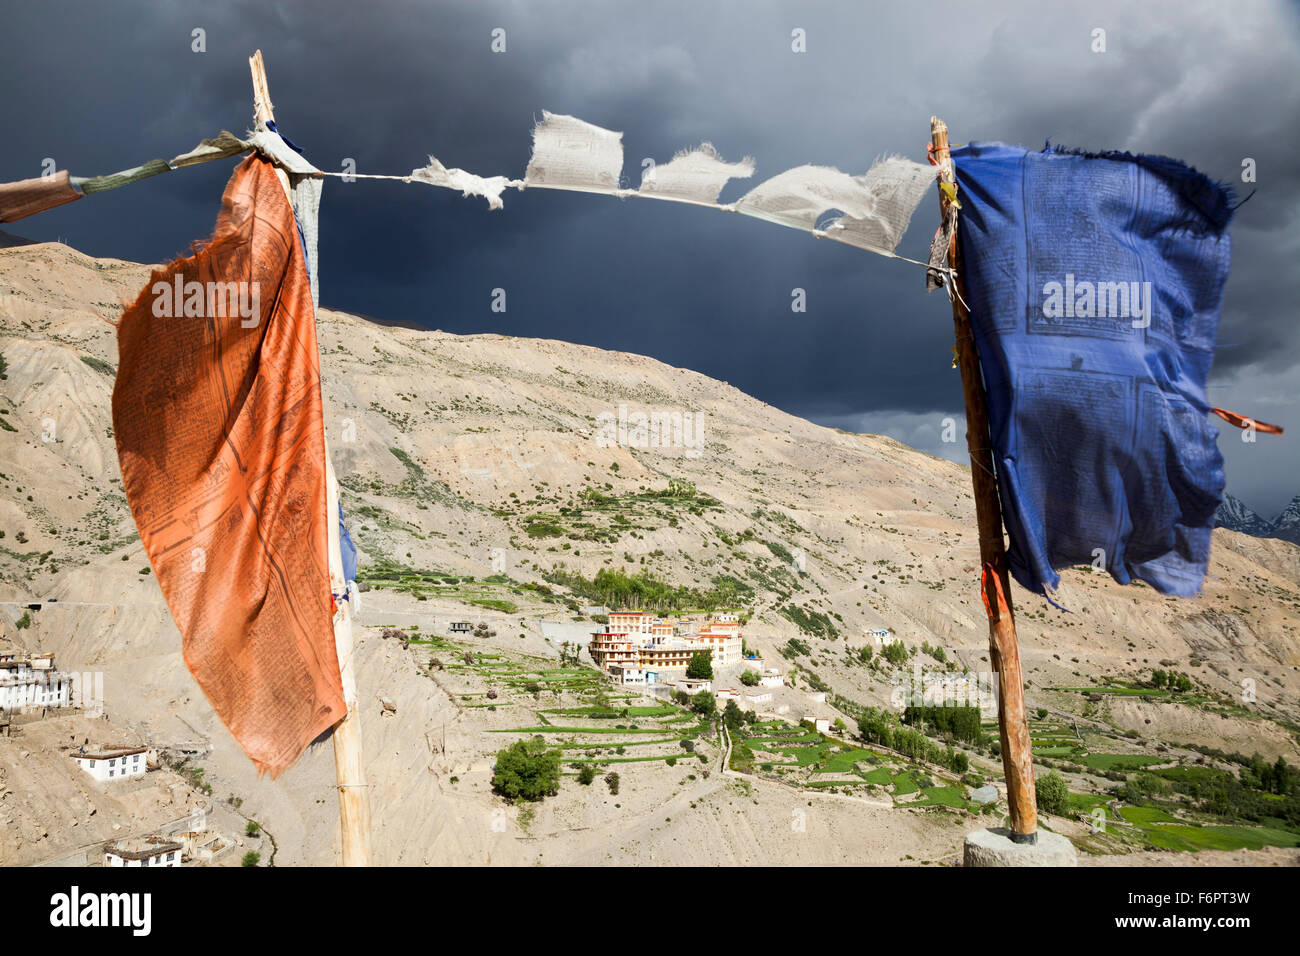 Tempesta si avvicina il nuovo monastero buddista a Dhankar nella regione himalayana di Himachal Pradesh, India Foto Stock